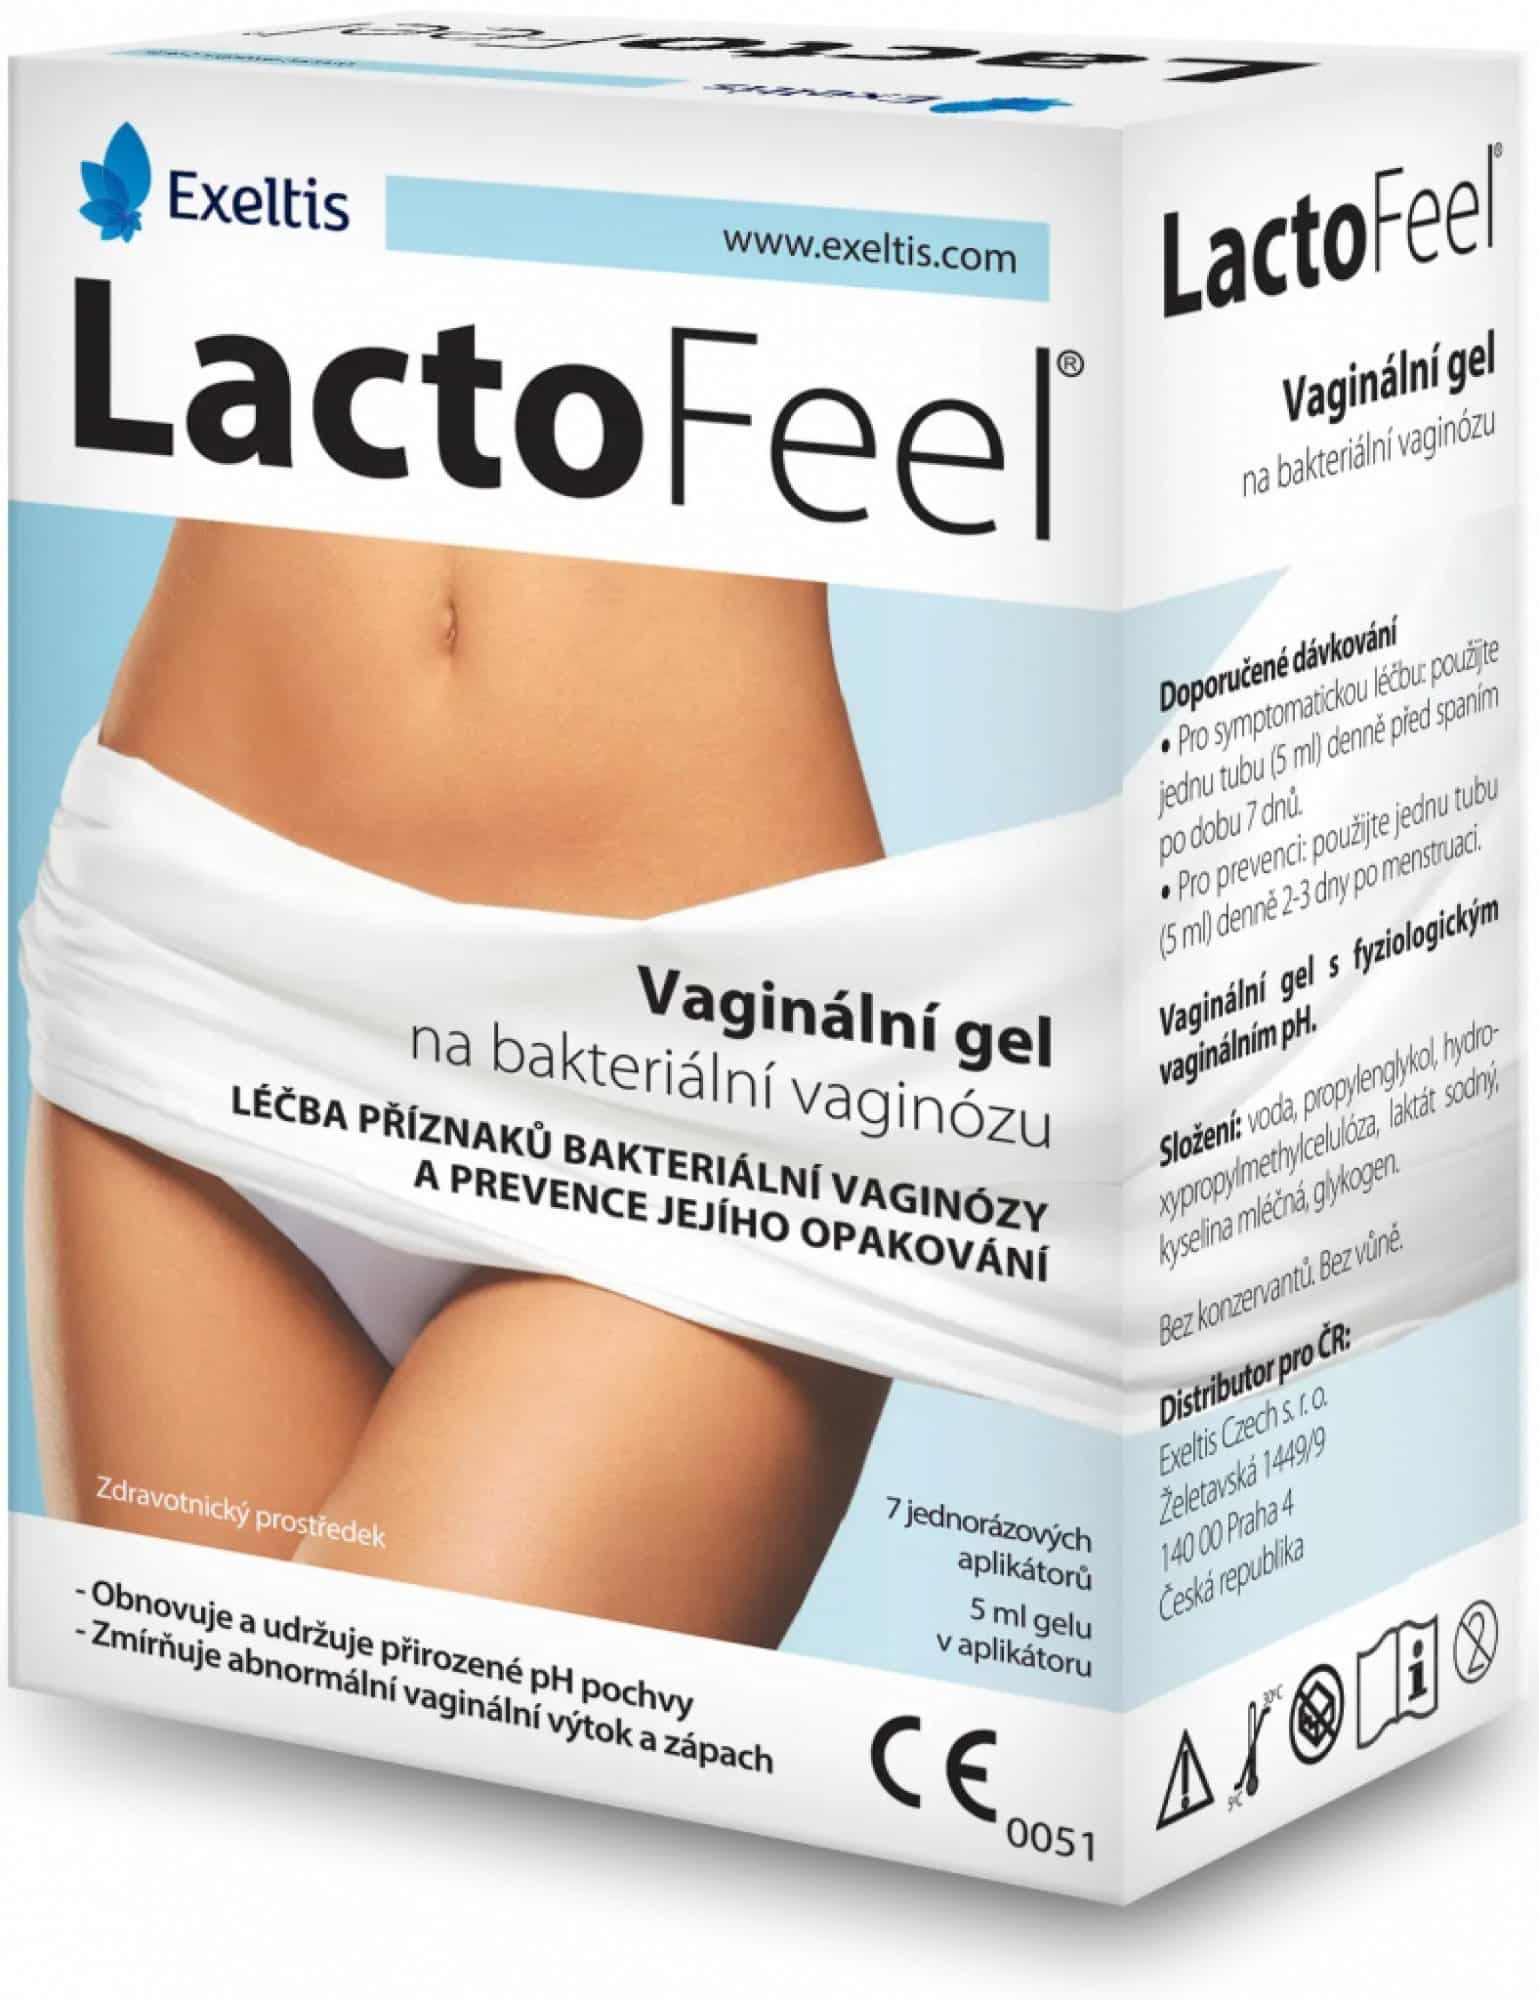 Lactofeel vaginální gel [recenze]: Jaké jsou s ním zkušenosti?